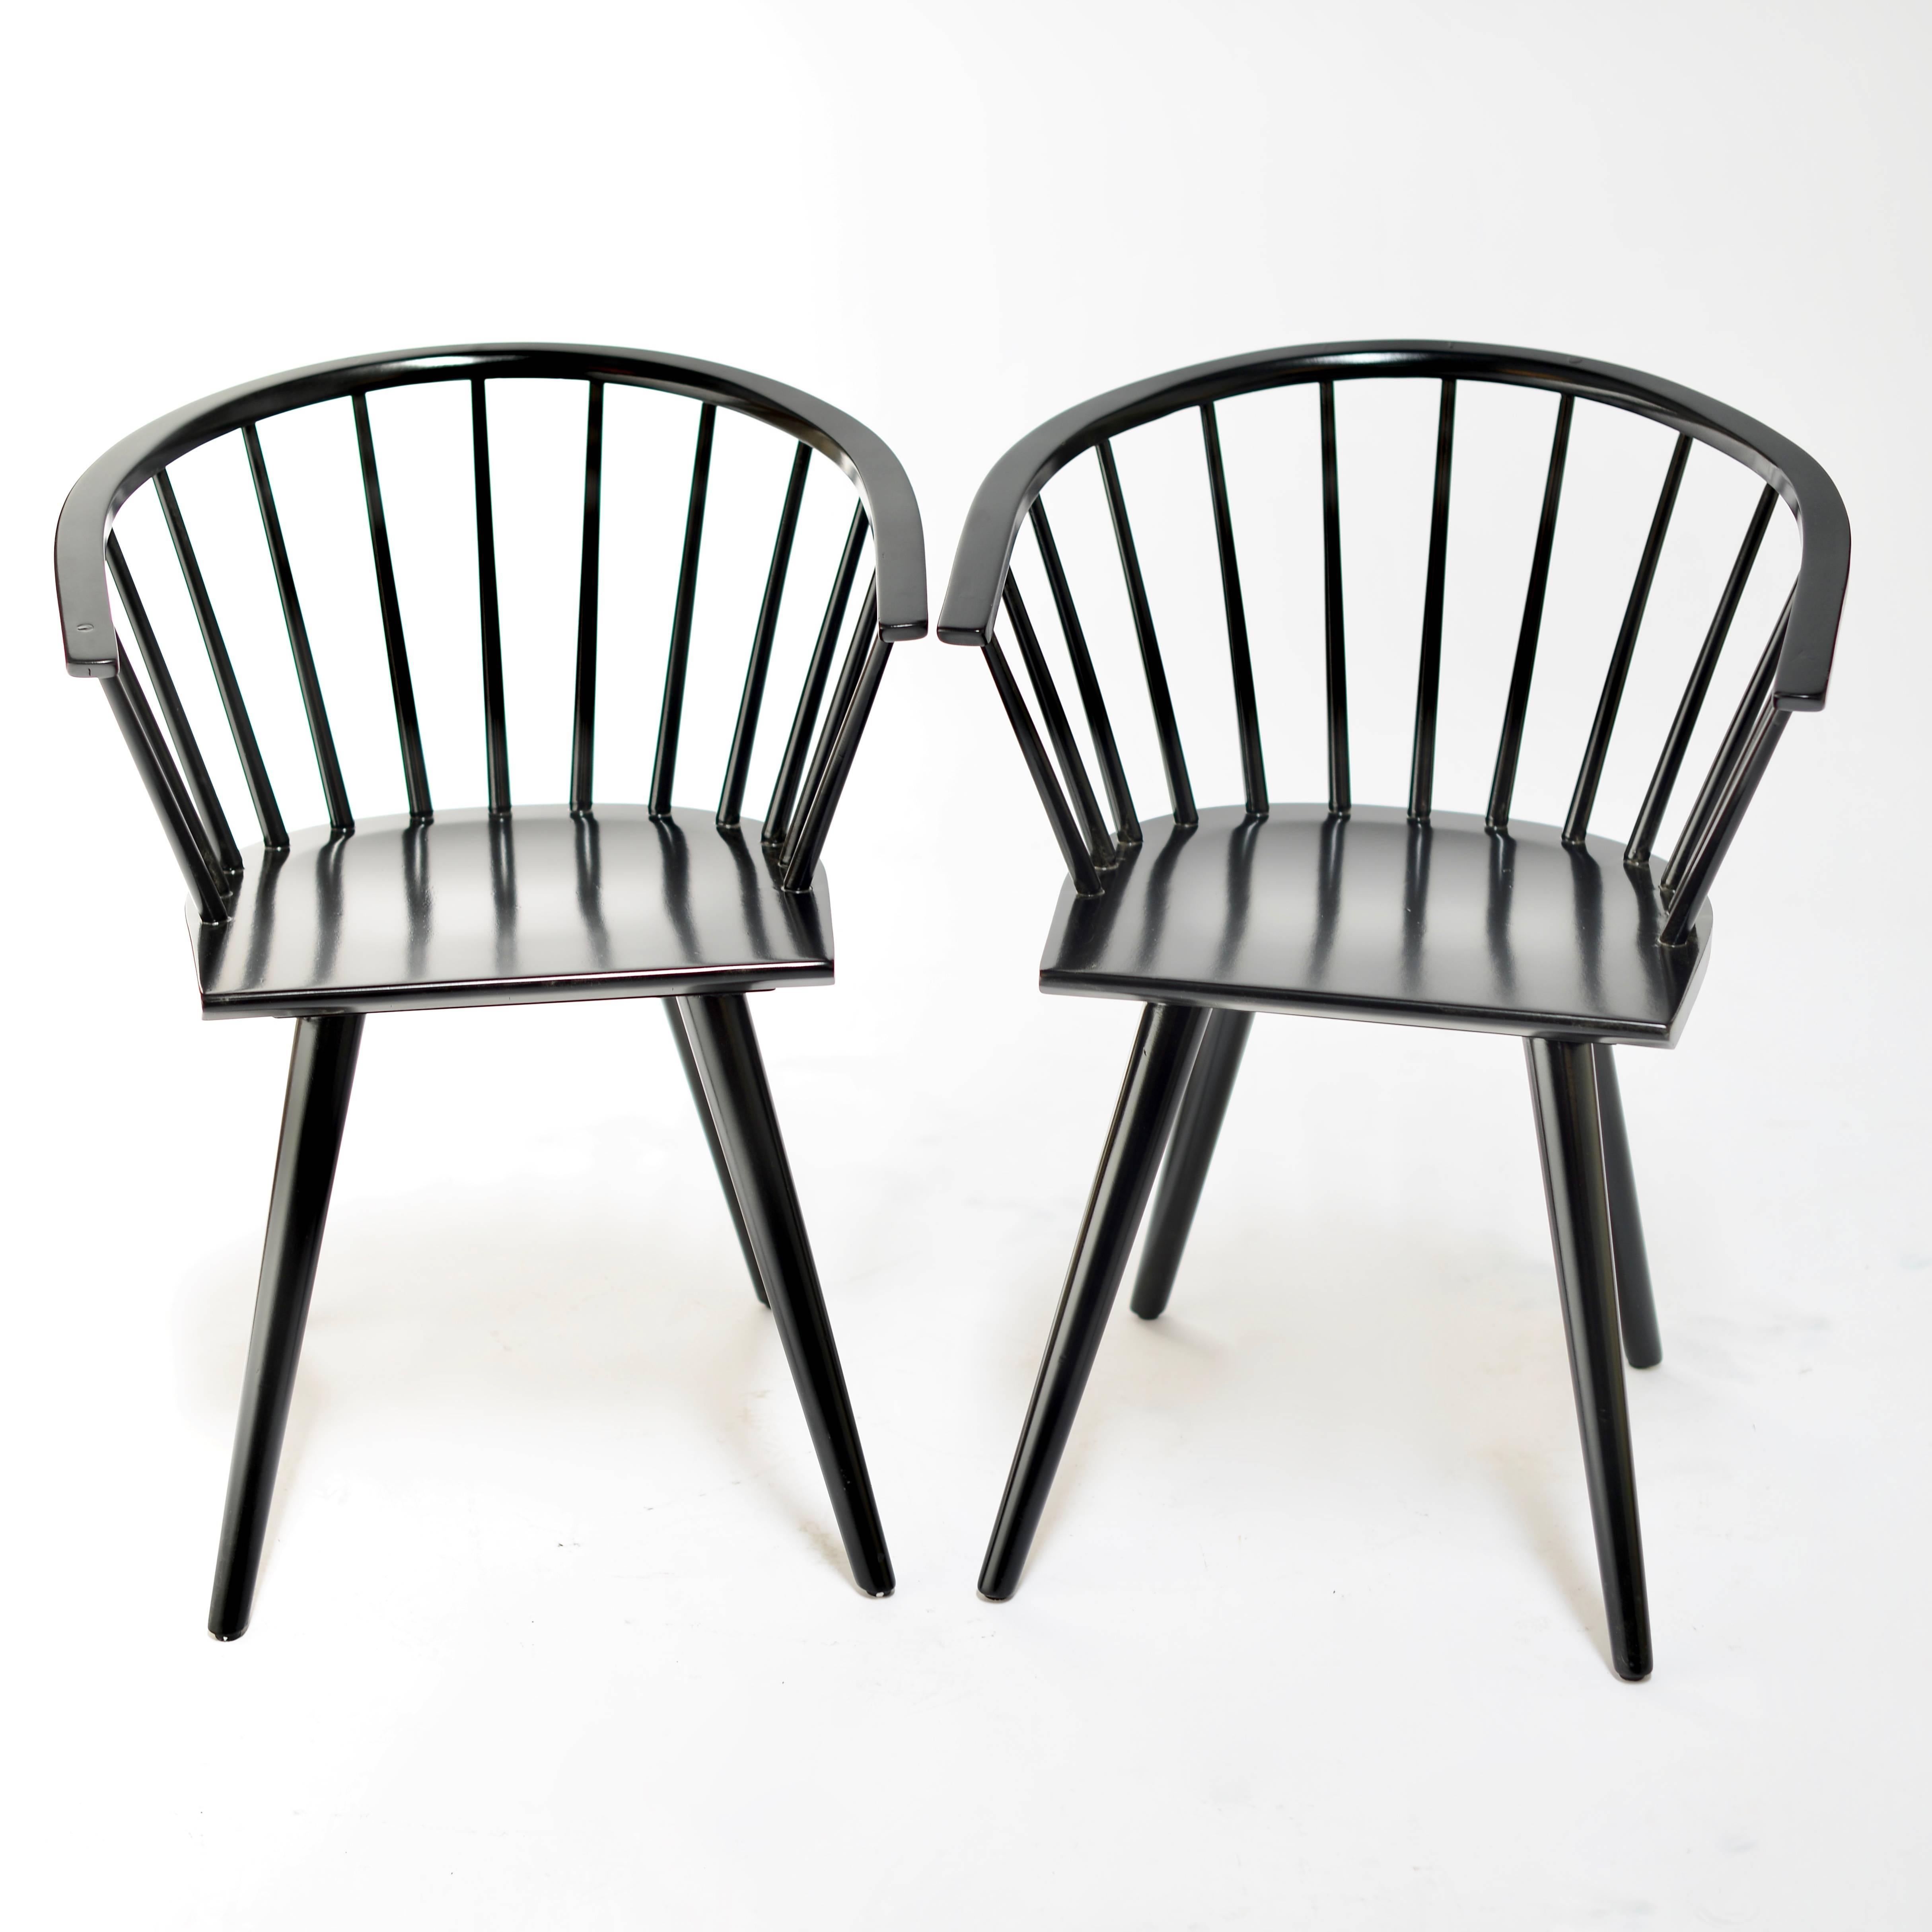 Satz von zwei von Windsor inspirierten Stühlen von Russel Wright für Conant Ball Company. Neu lackiert in Ebenholz.
 